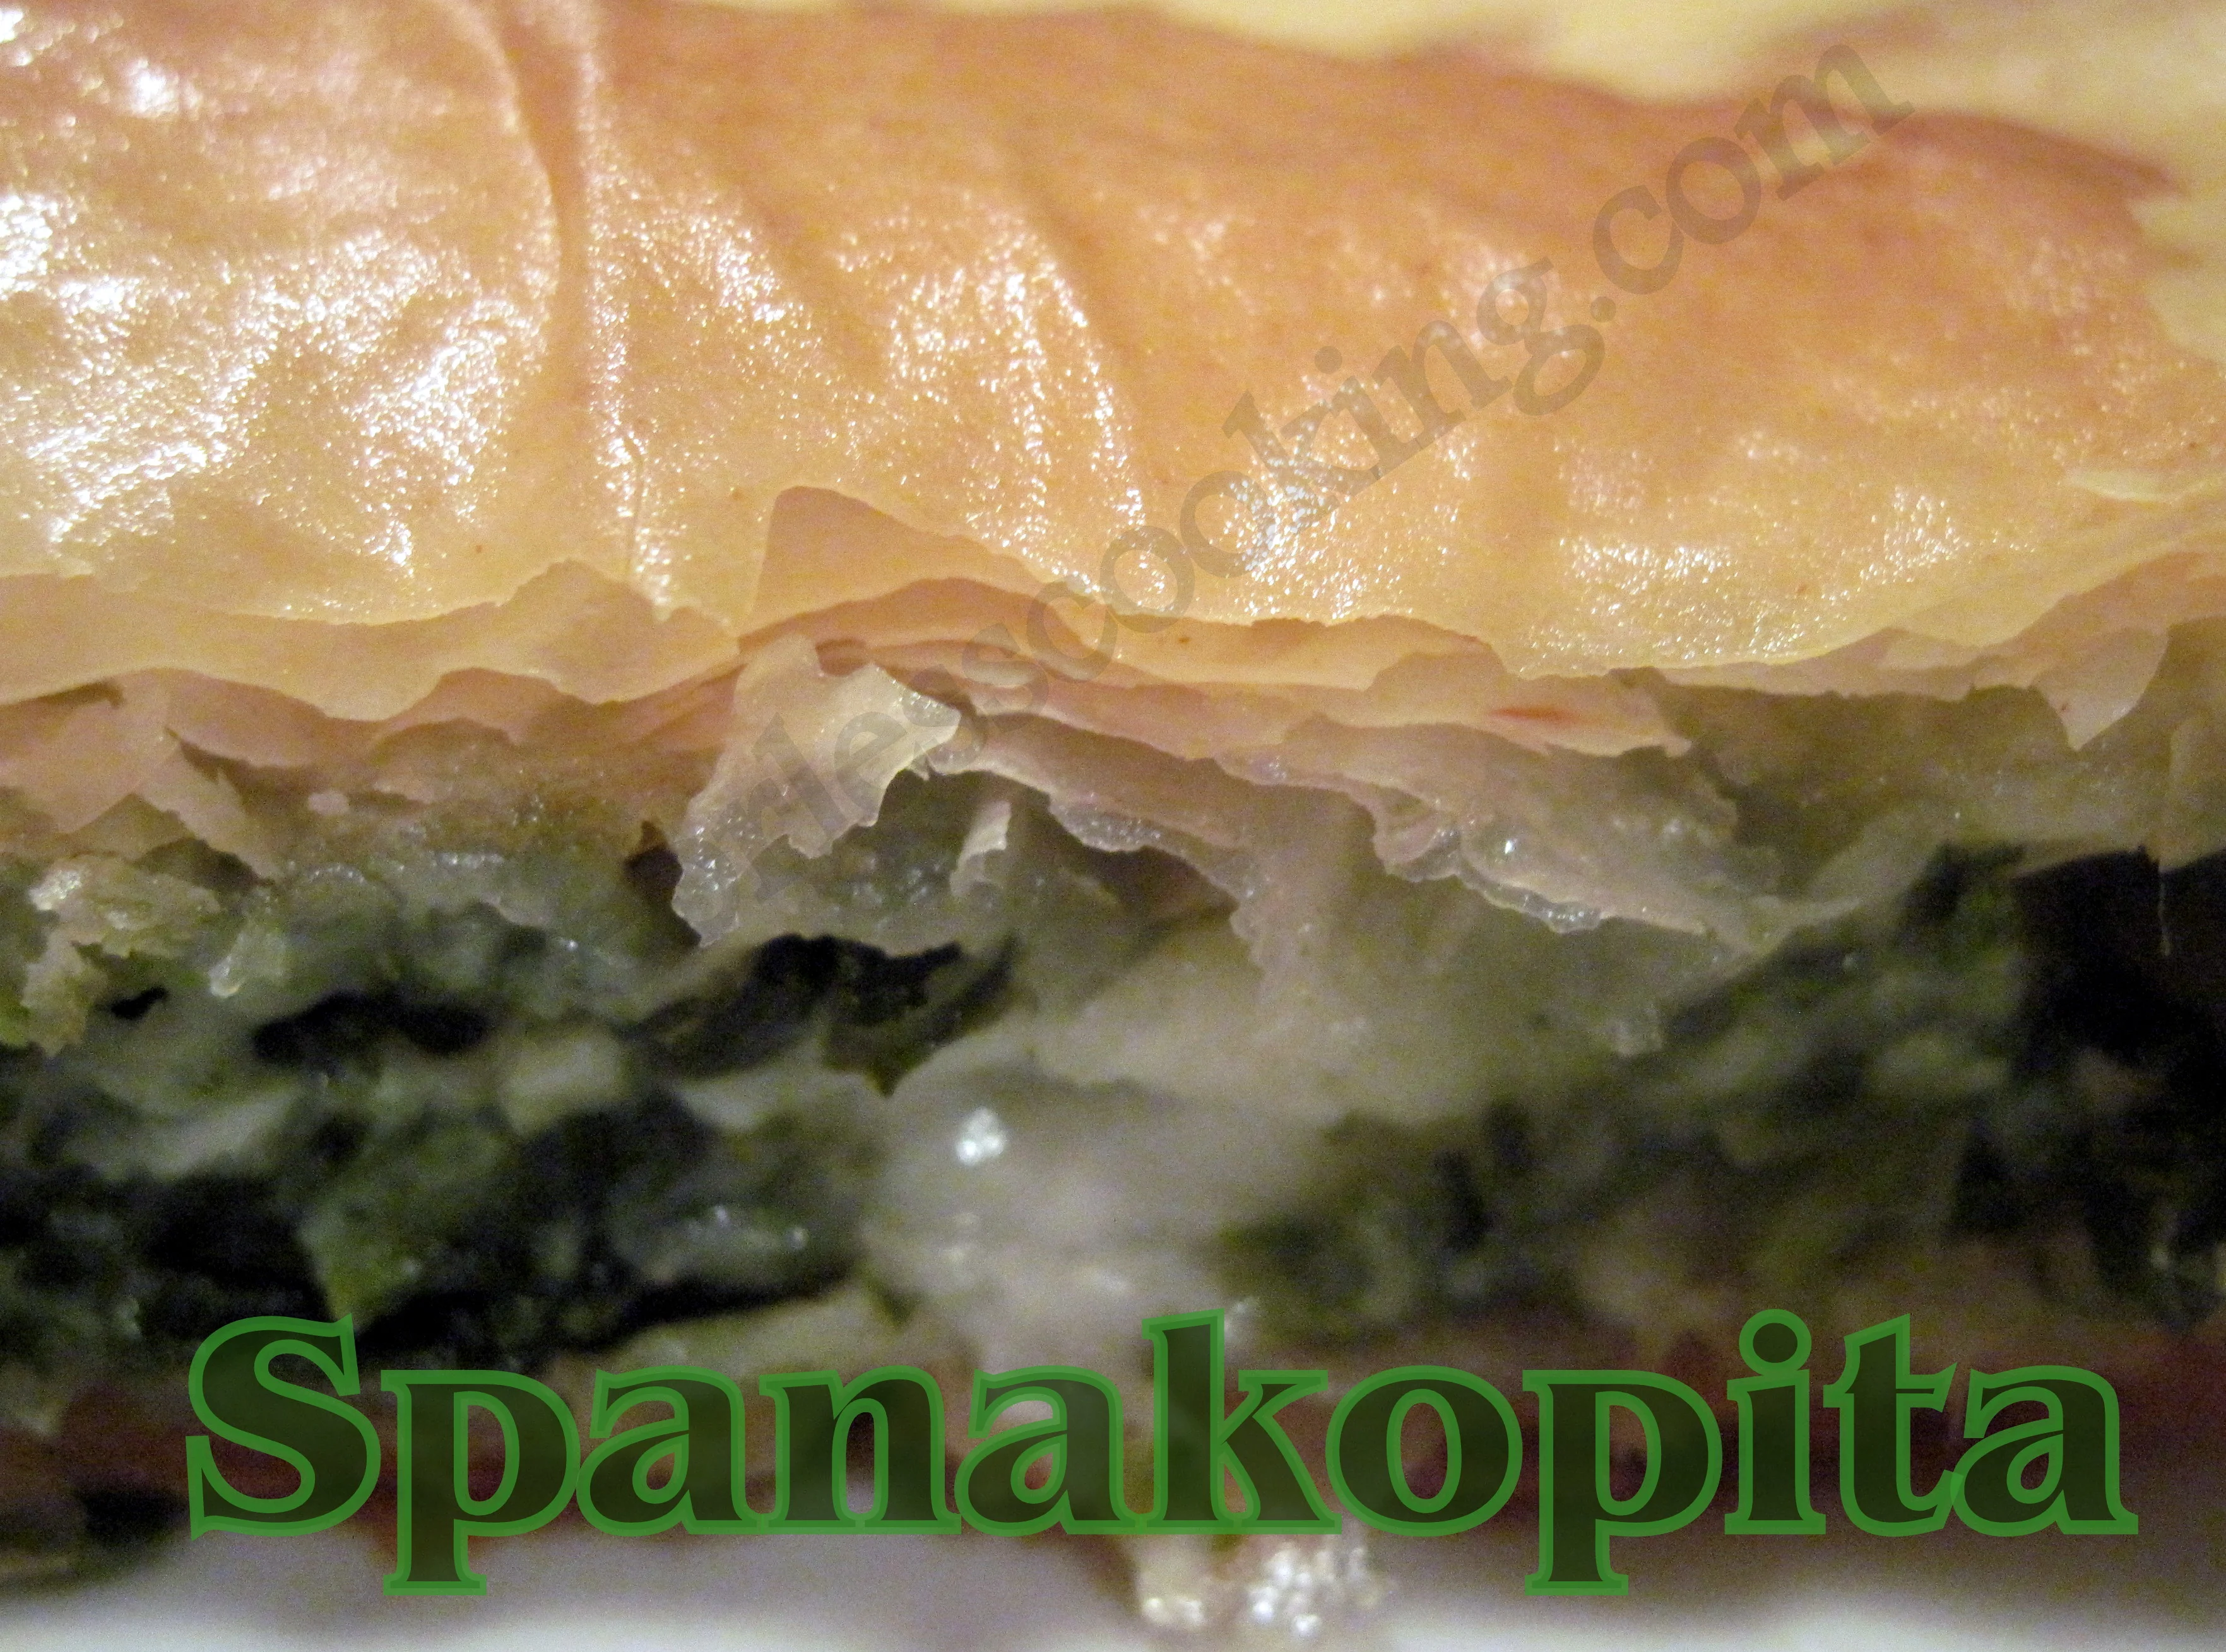 Spanakopita (Greek Spinach Pie)